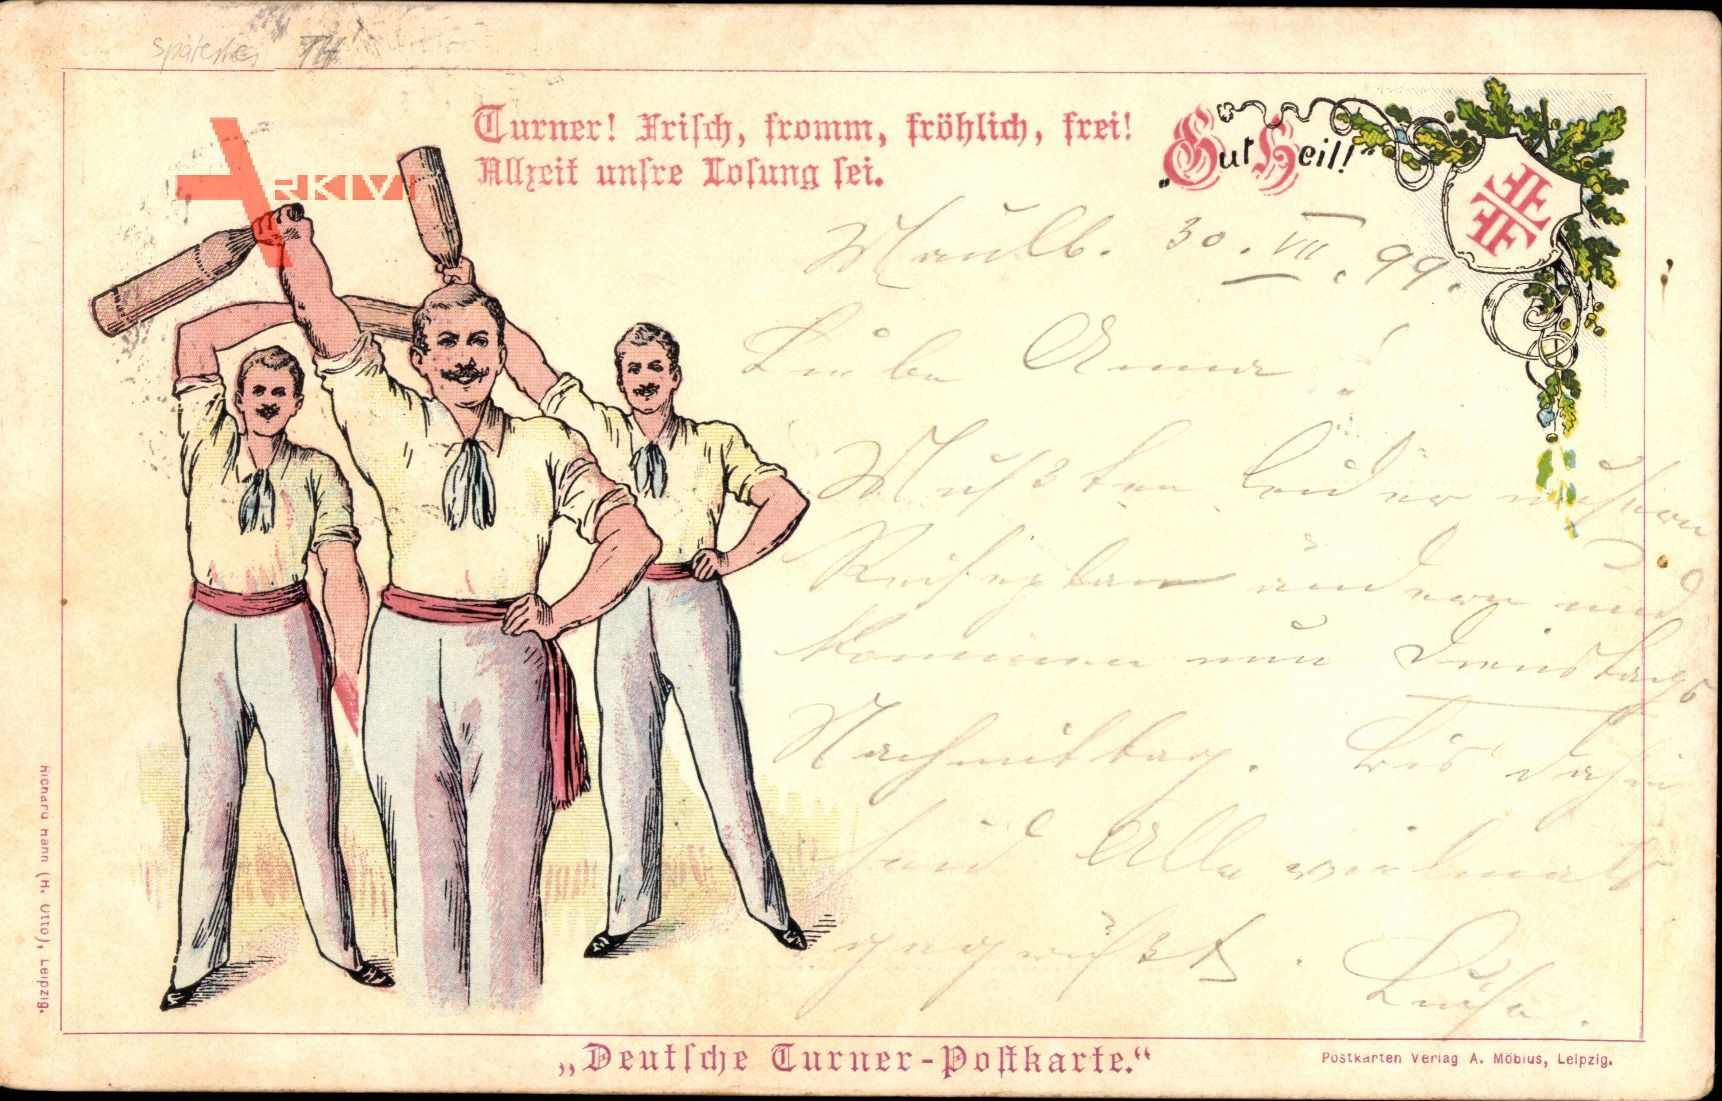 Deutsche Turner Postkarte, Turner, Frisch, fromm, fröhlich, frei